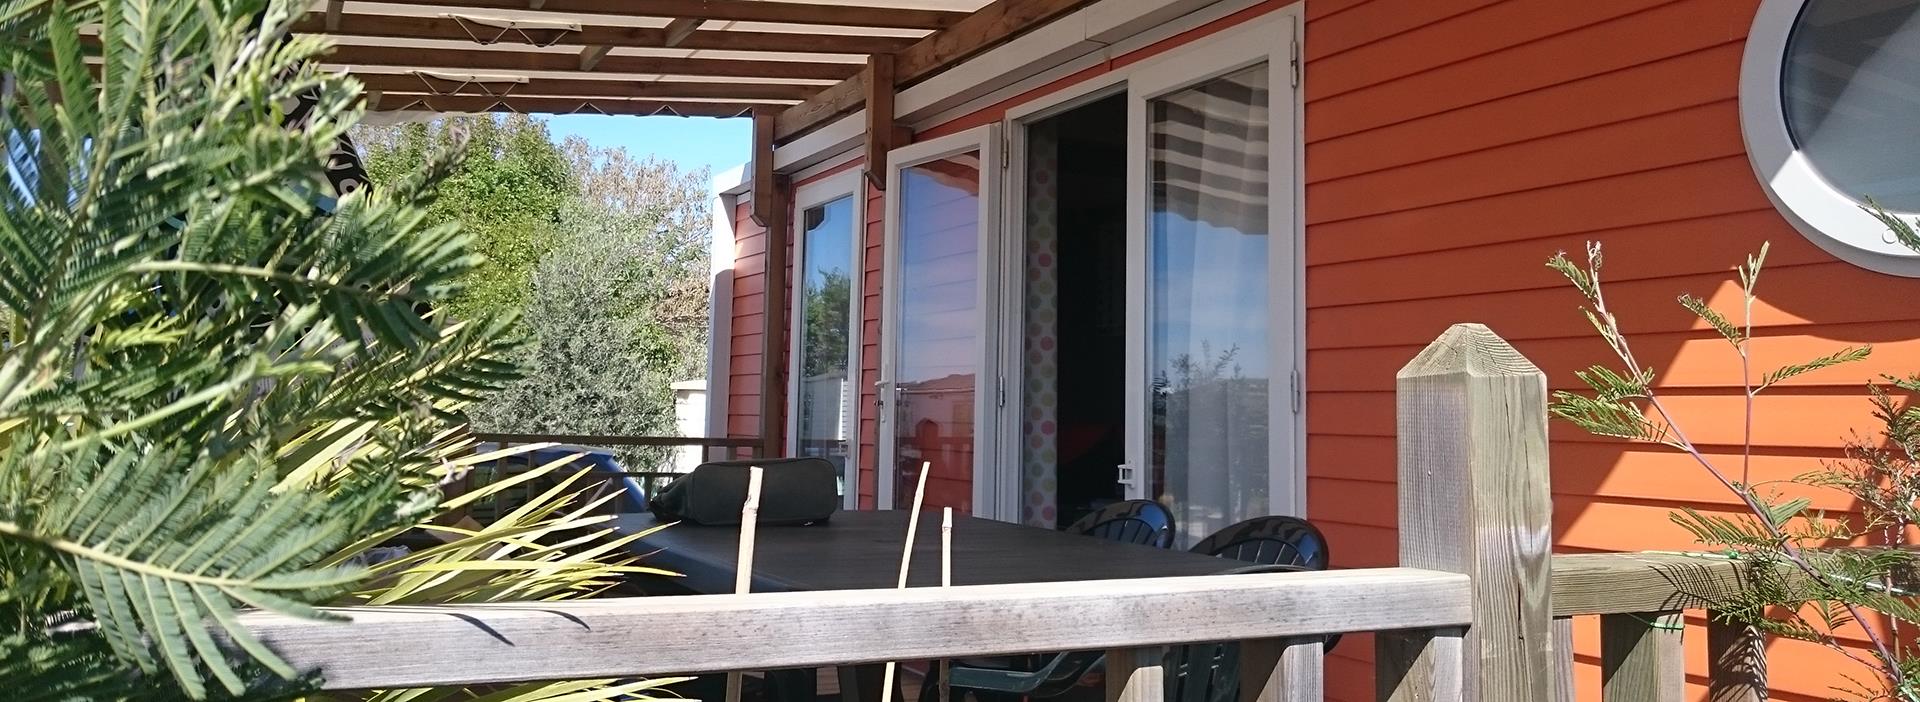 Vista exterior del mobil home Tendancia para 4 personas, en alquiler en el camping Les Amandiers en el Hérault